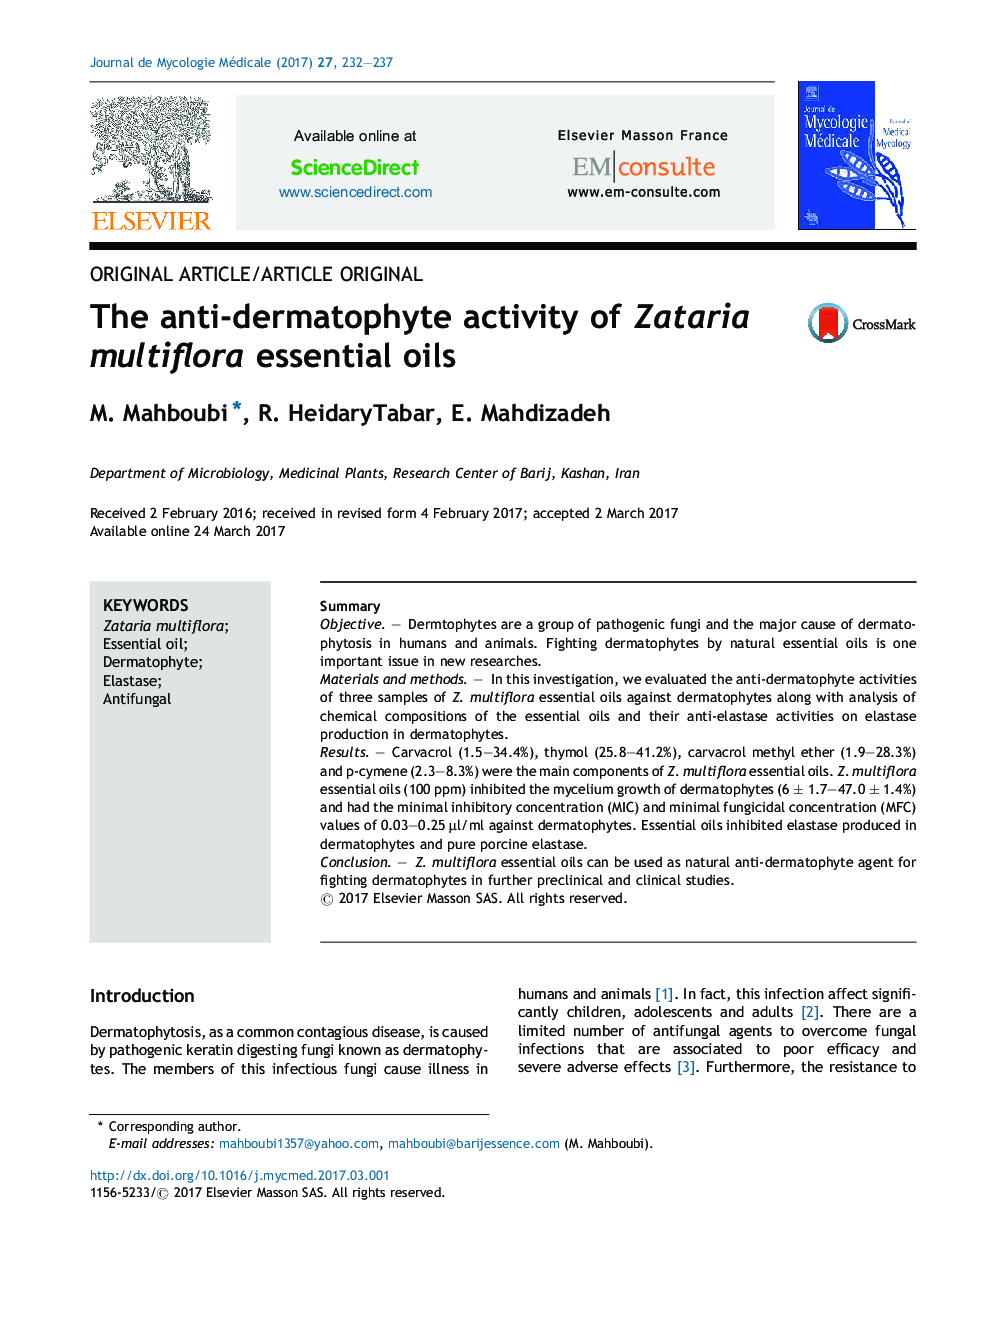 The anti-dermatophyte activity of Zataria multiflora essential oils